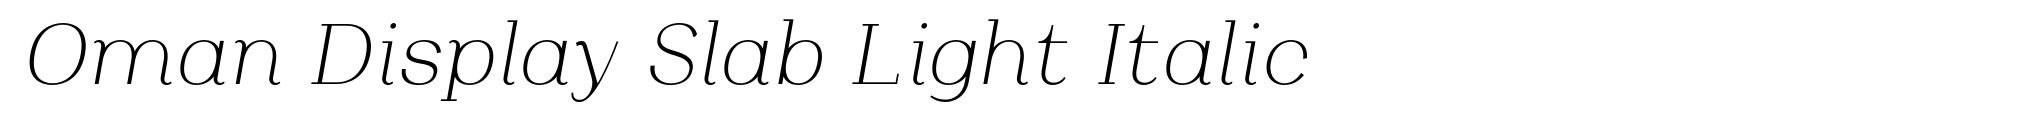 Oman Display Slab Light Italic image